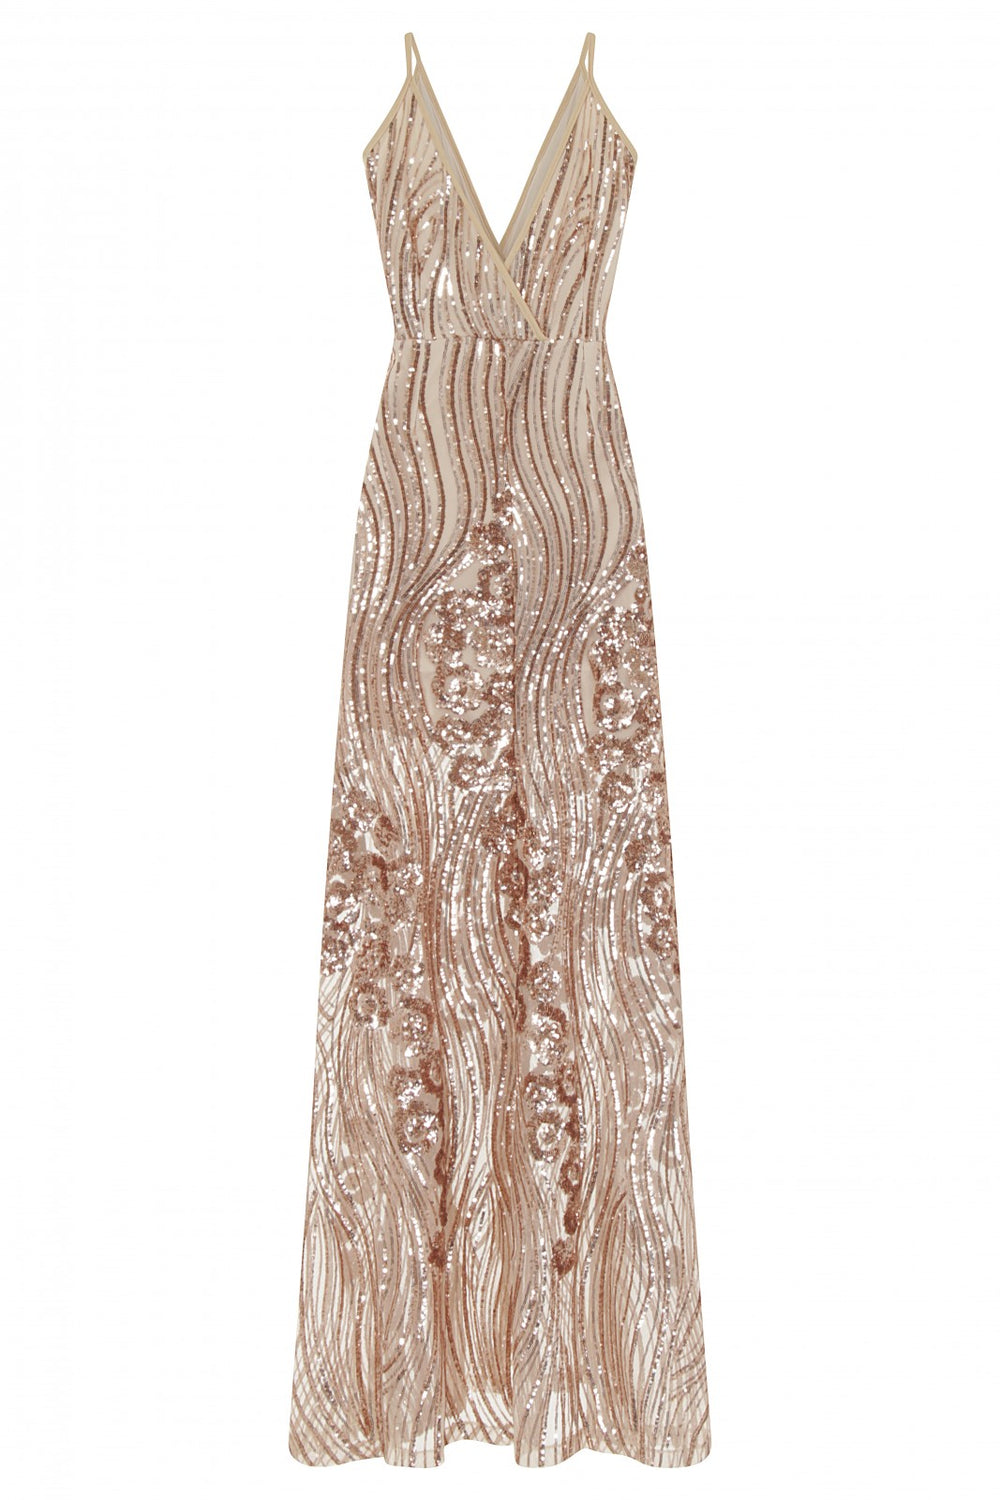 Amor Rose Gold Sheer Shimmer Floral Sequin Slit Maxi Dress